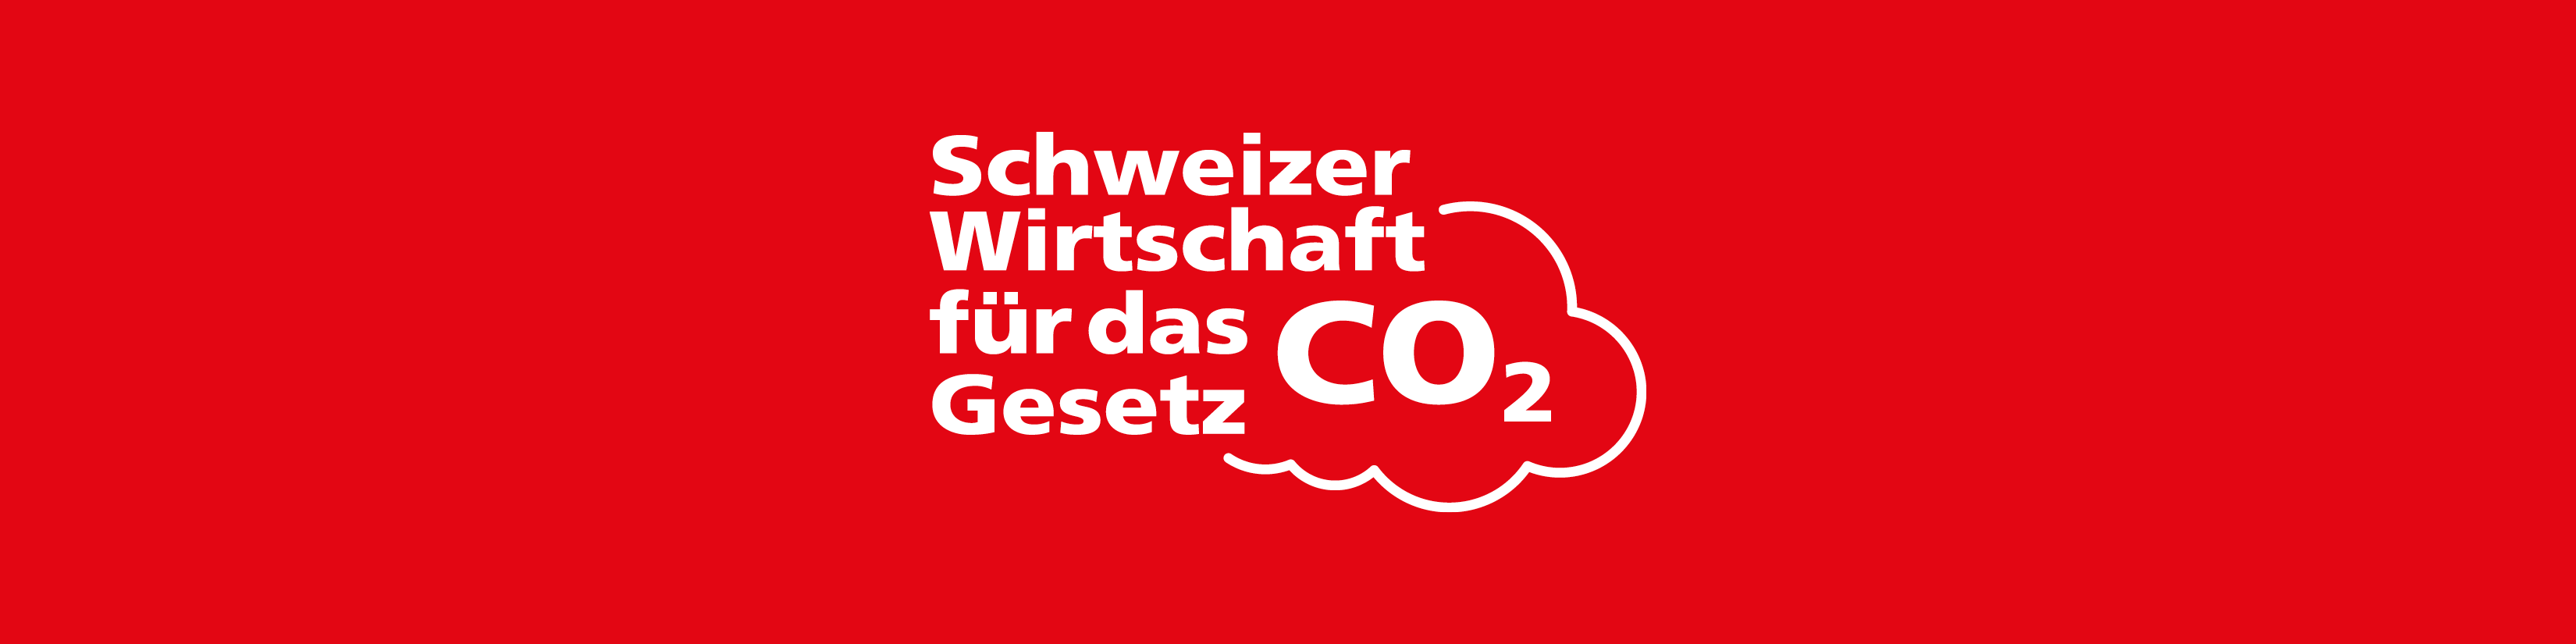 Schweizer Wirtschaft für das CO2-Gesetz